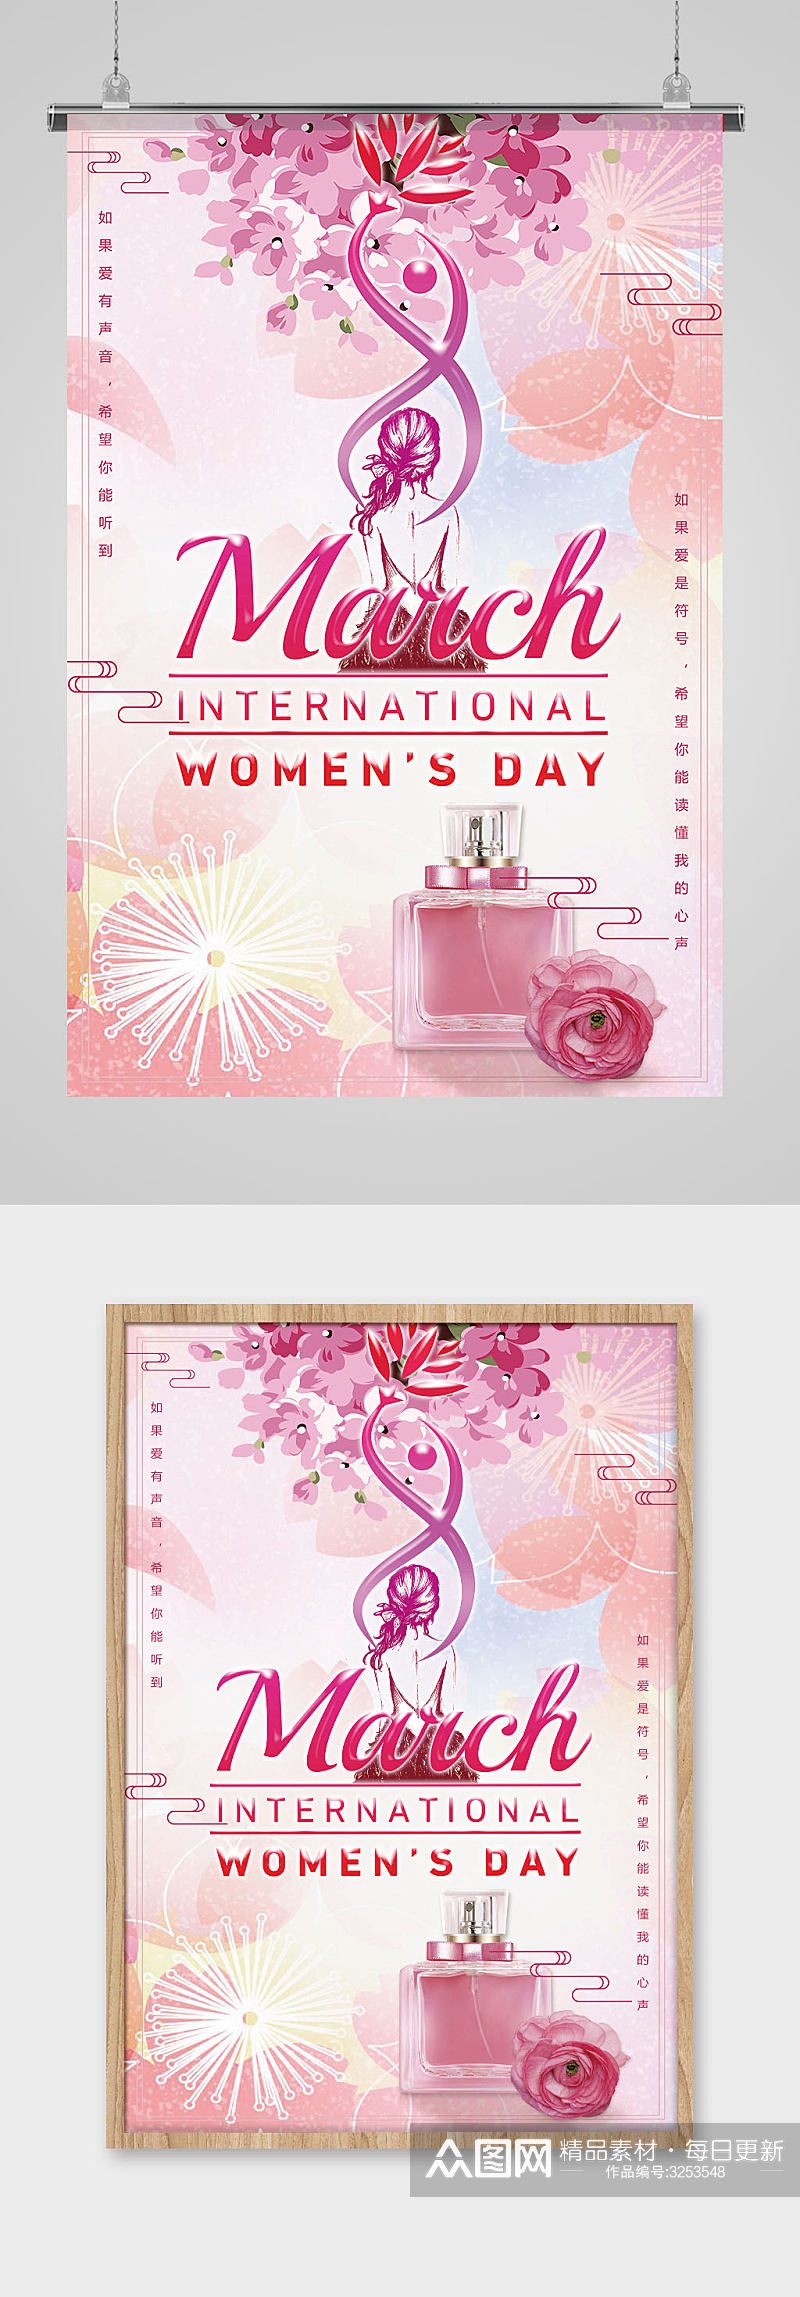 唯美浪漫节日妇女节促销宣传海报设计素材